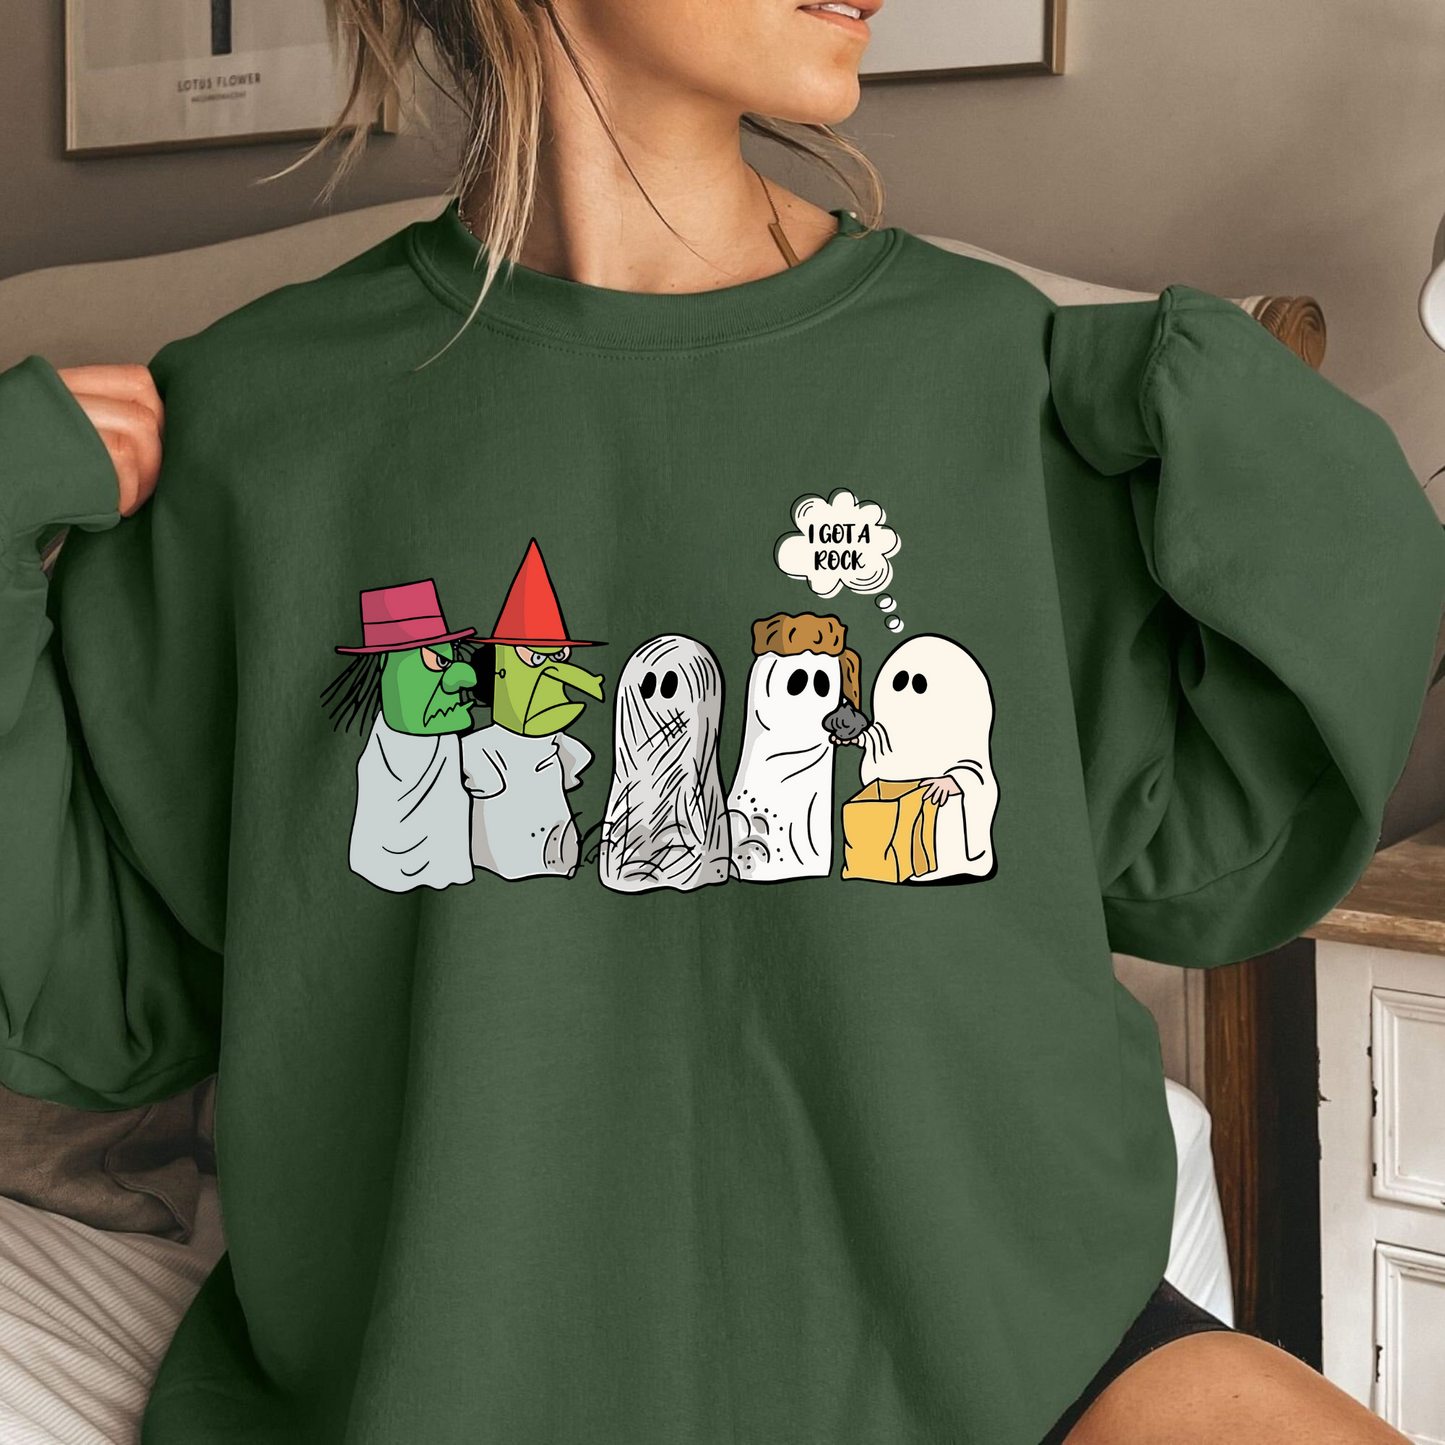 Lustiges Geister-T-Shirt – Geschenk für Halloween